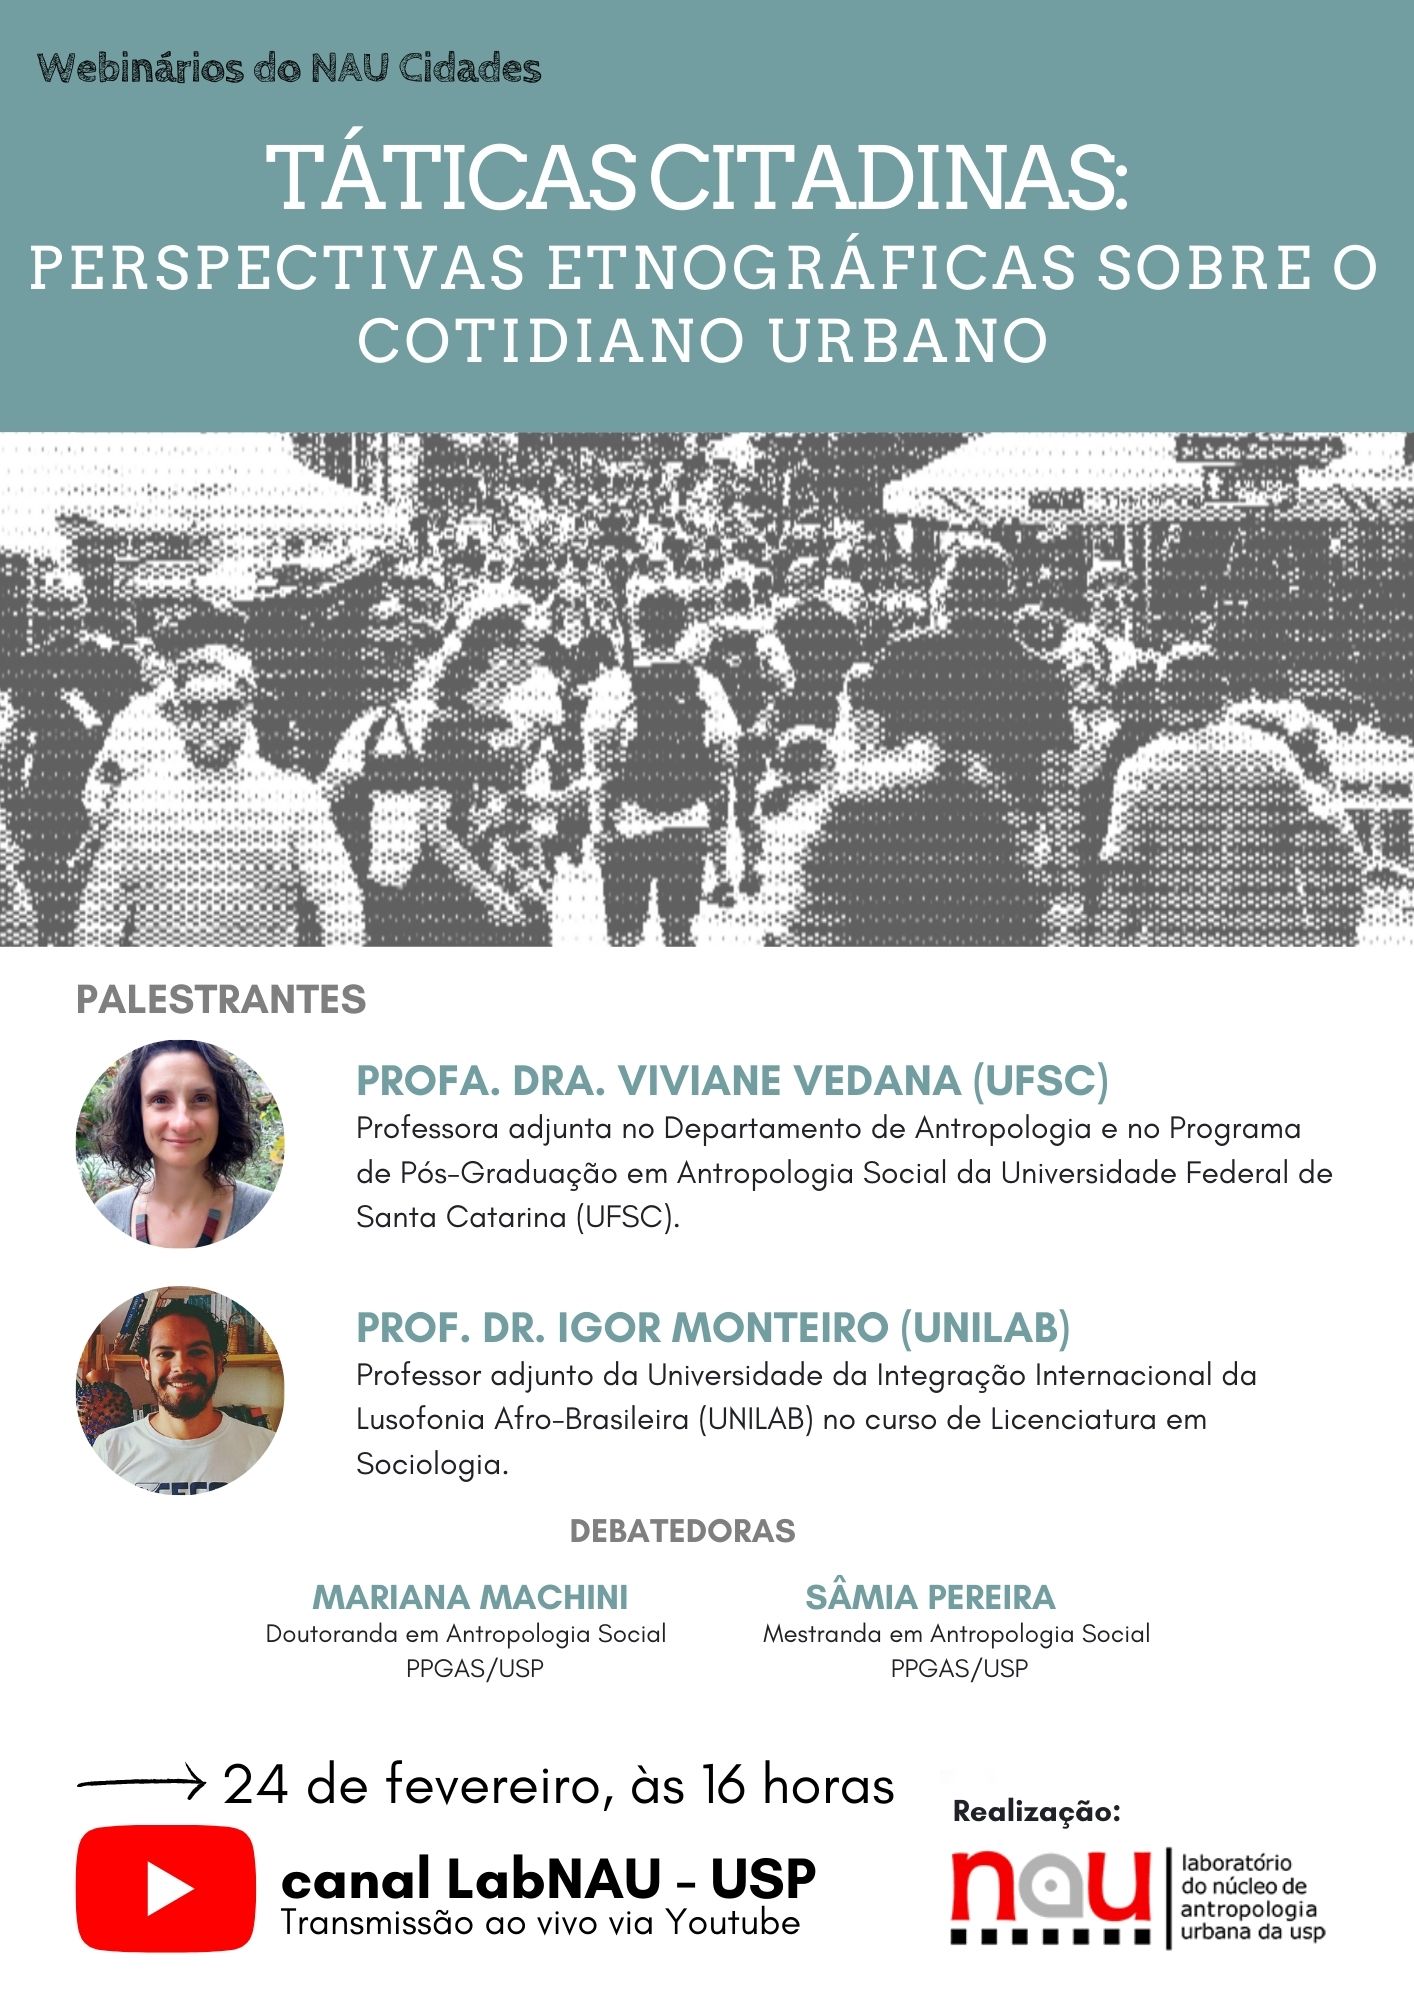 Webinário do Núcleo de Antropologia Urbana da USP: Táticas citadinas: perspectivas etnográficas sobre o cotidiano urbano